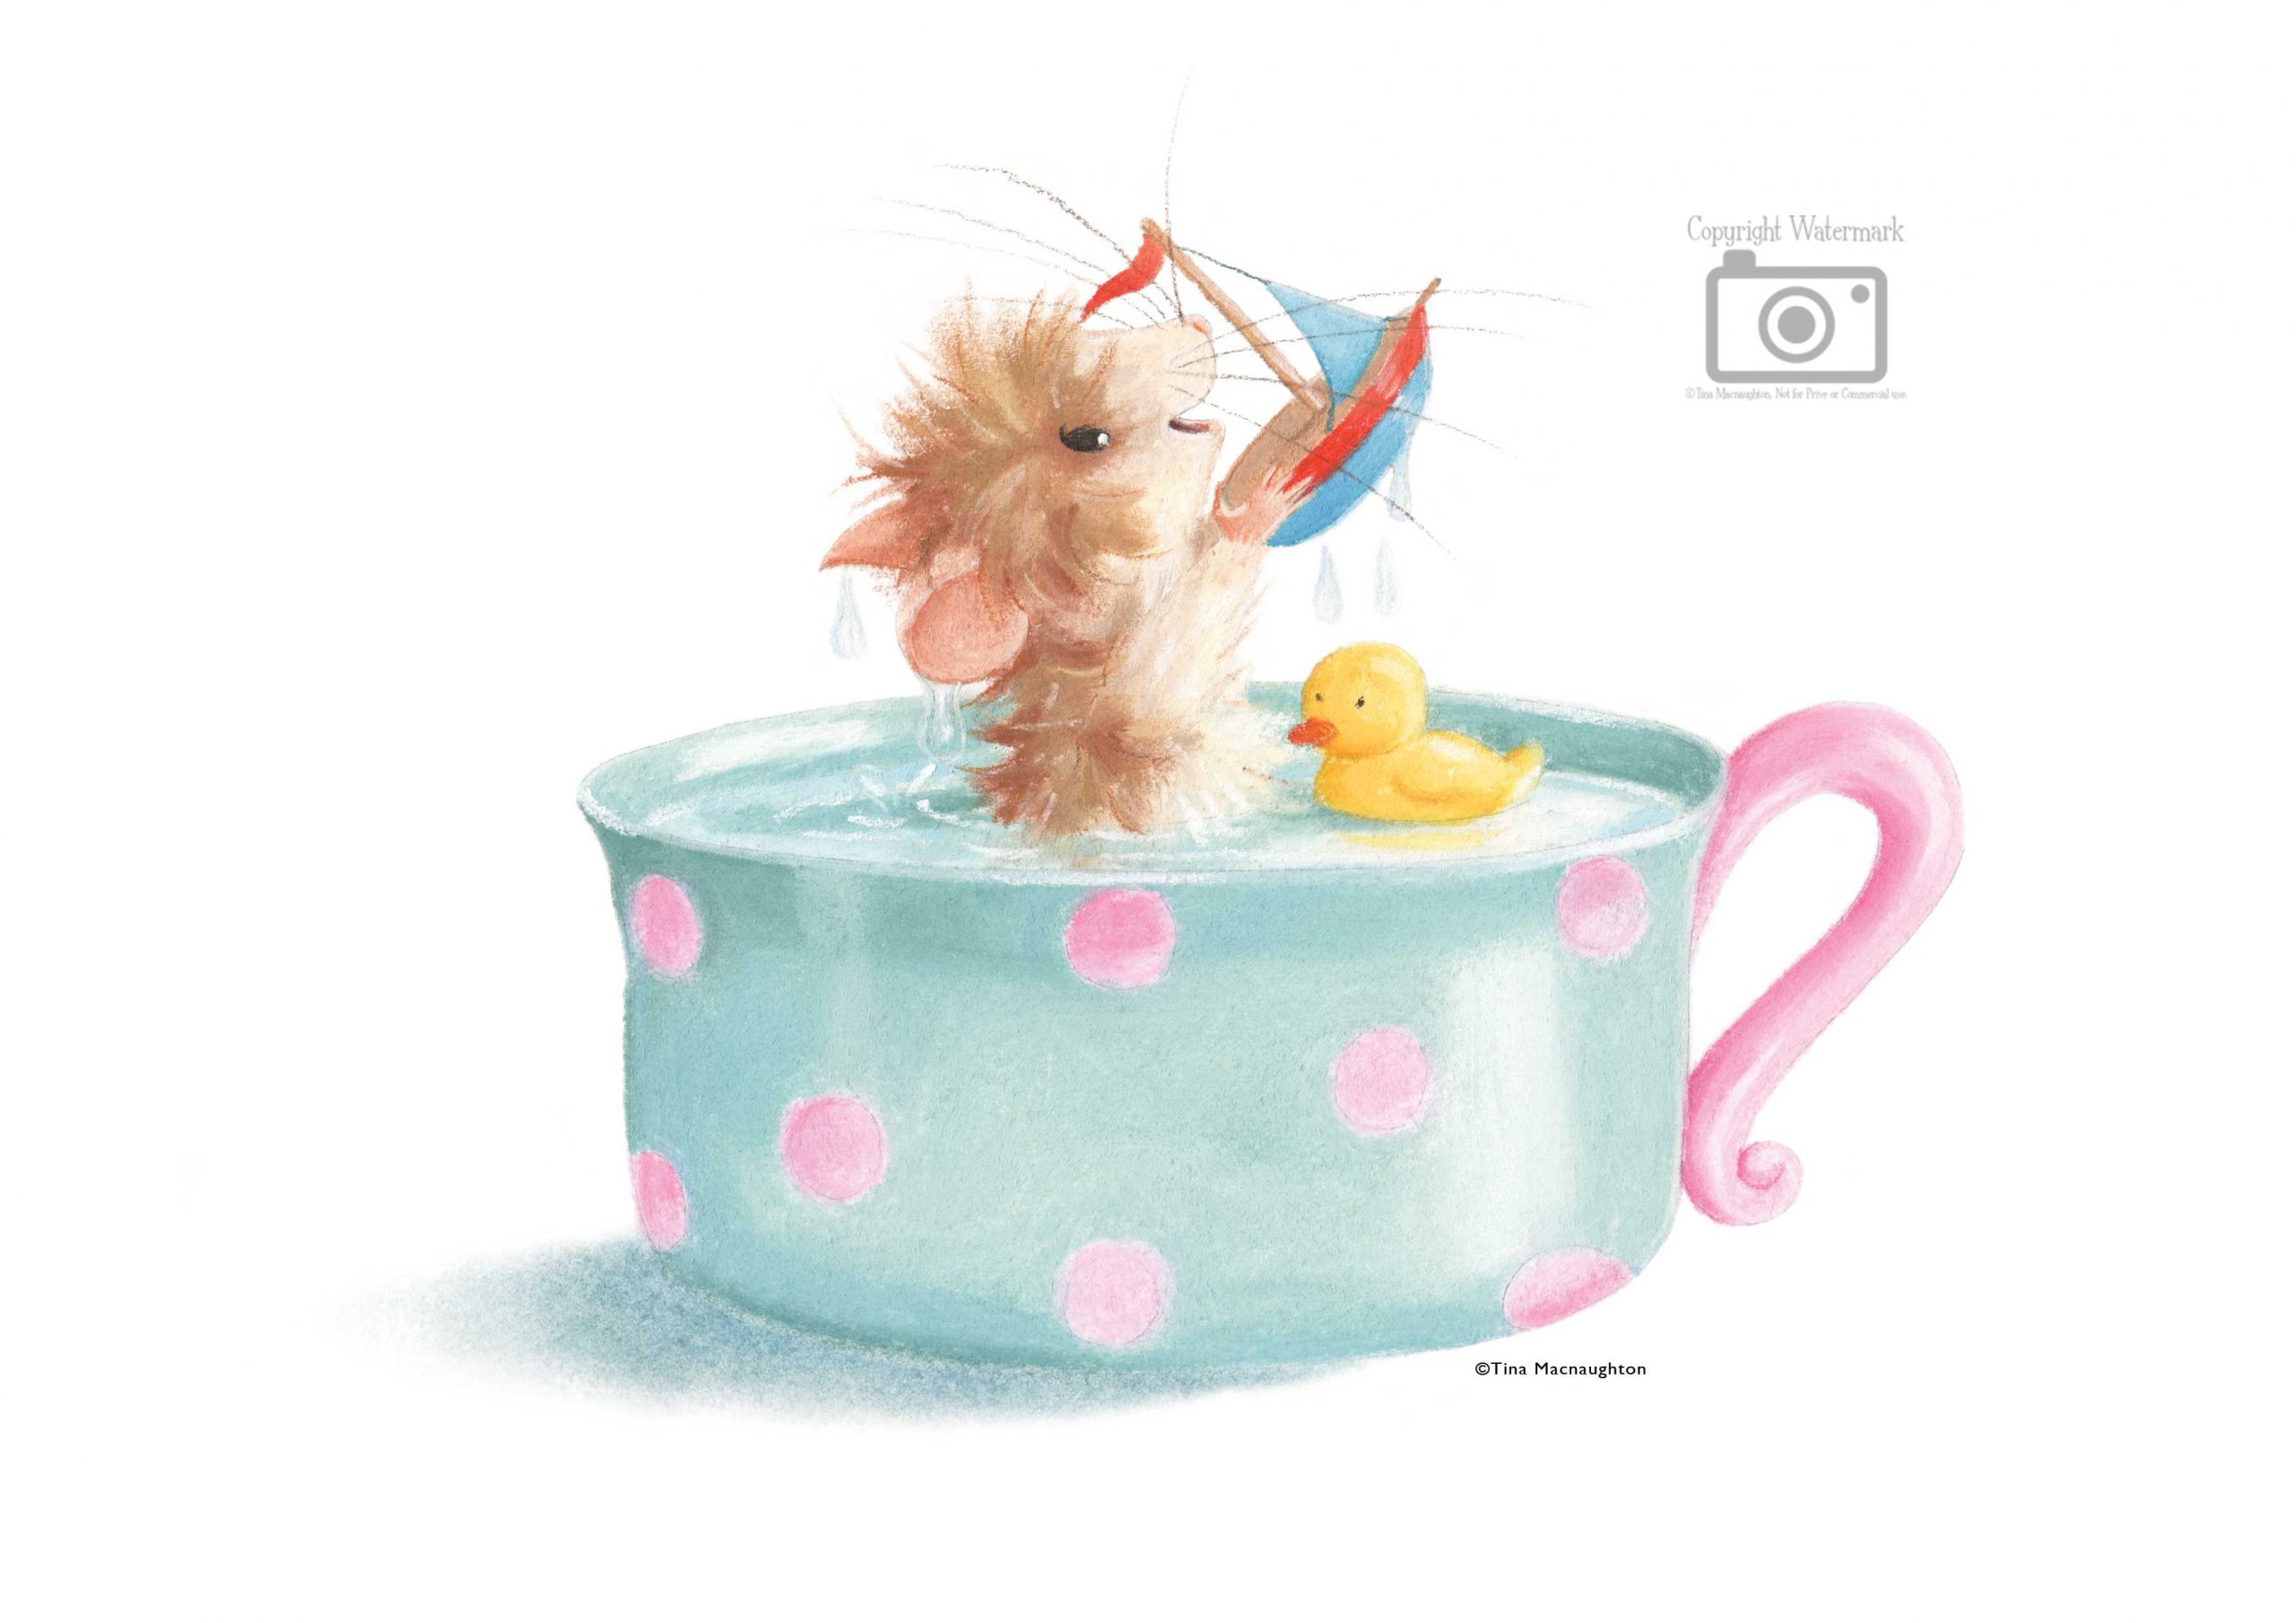 Tiffy Mouse Teacup Bath by Tina Macnaughton.